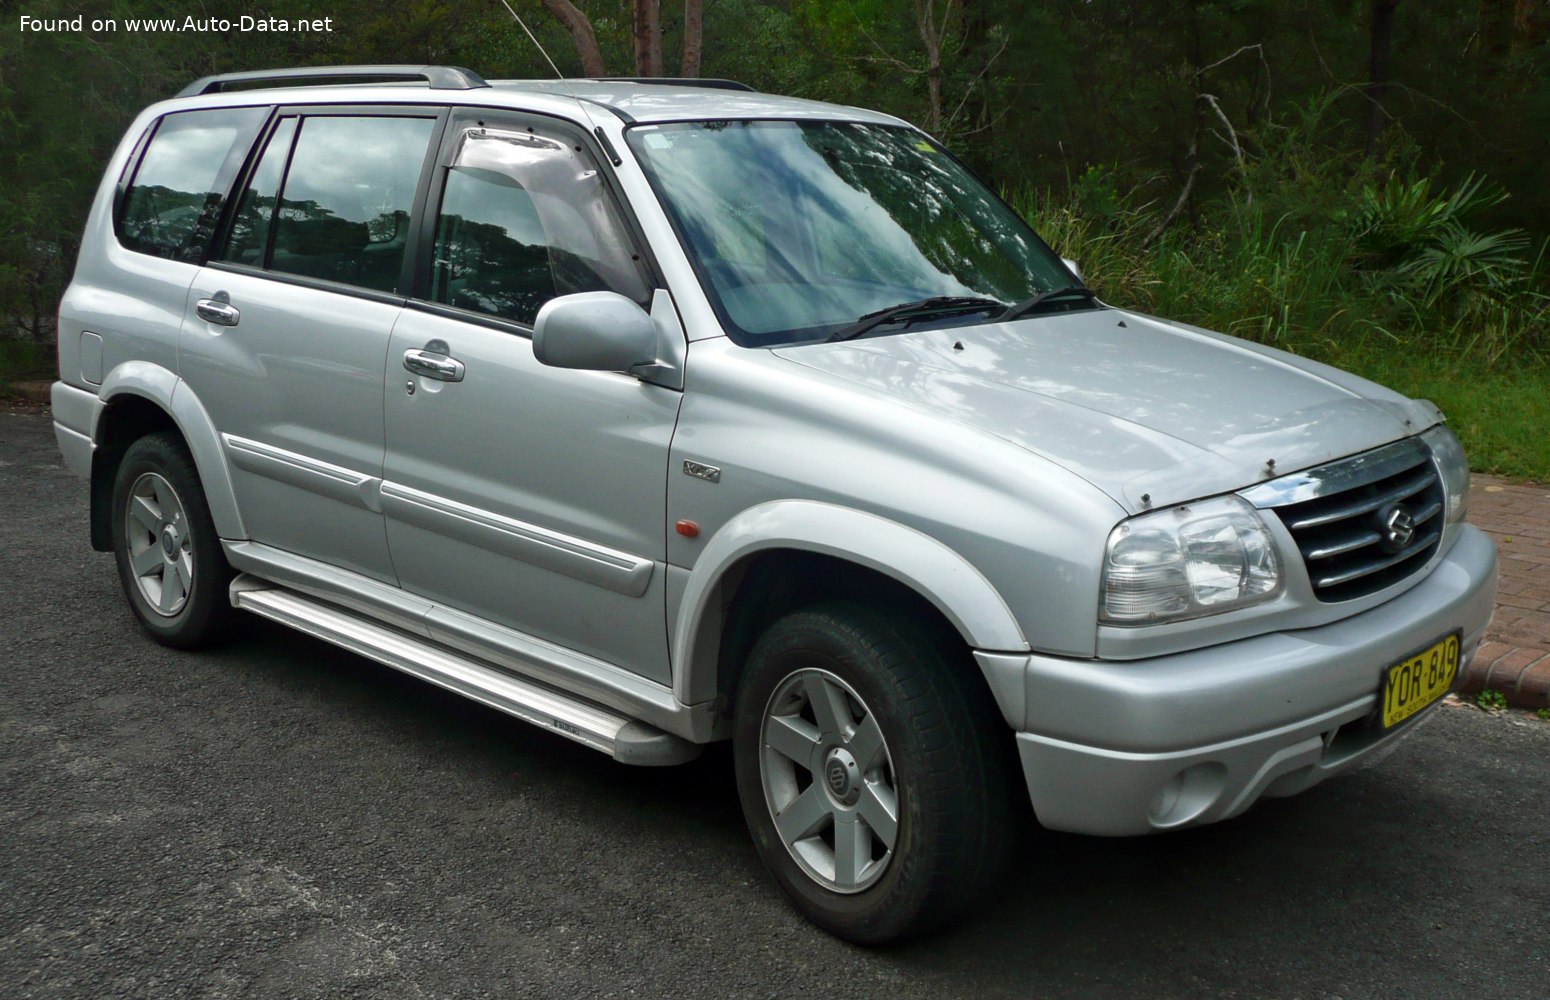 1998 Suzuki Grand Vitara XL7 (HT) 2.7 i V6 (173 KM